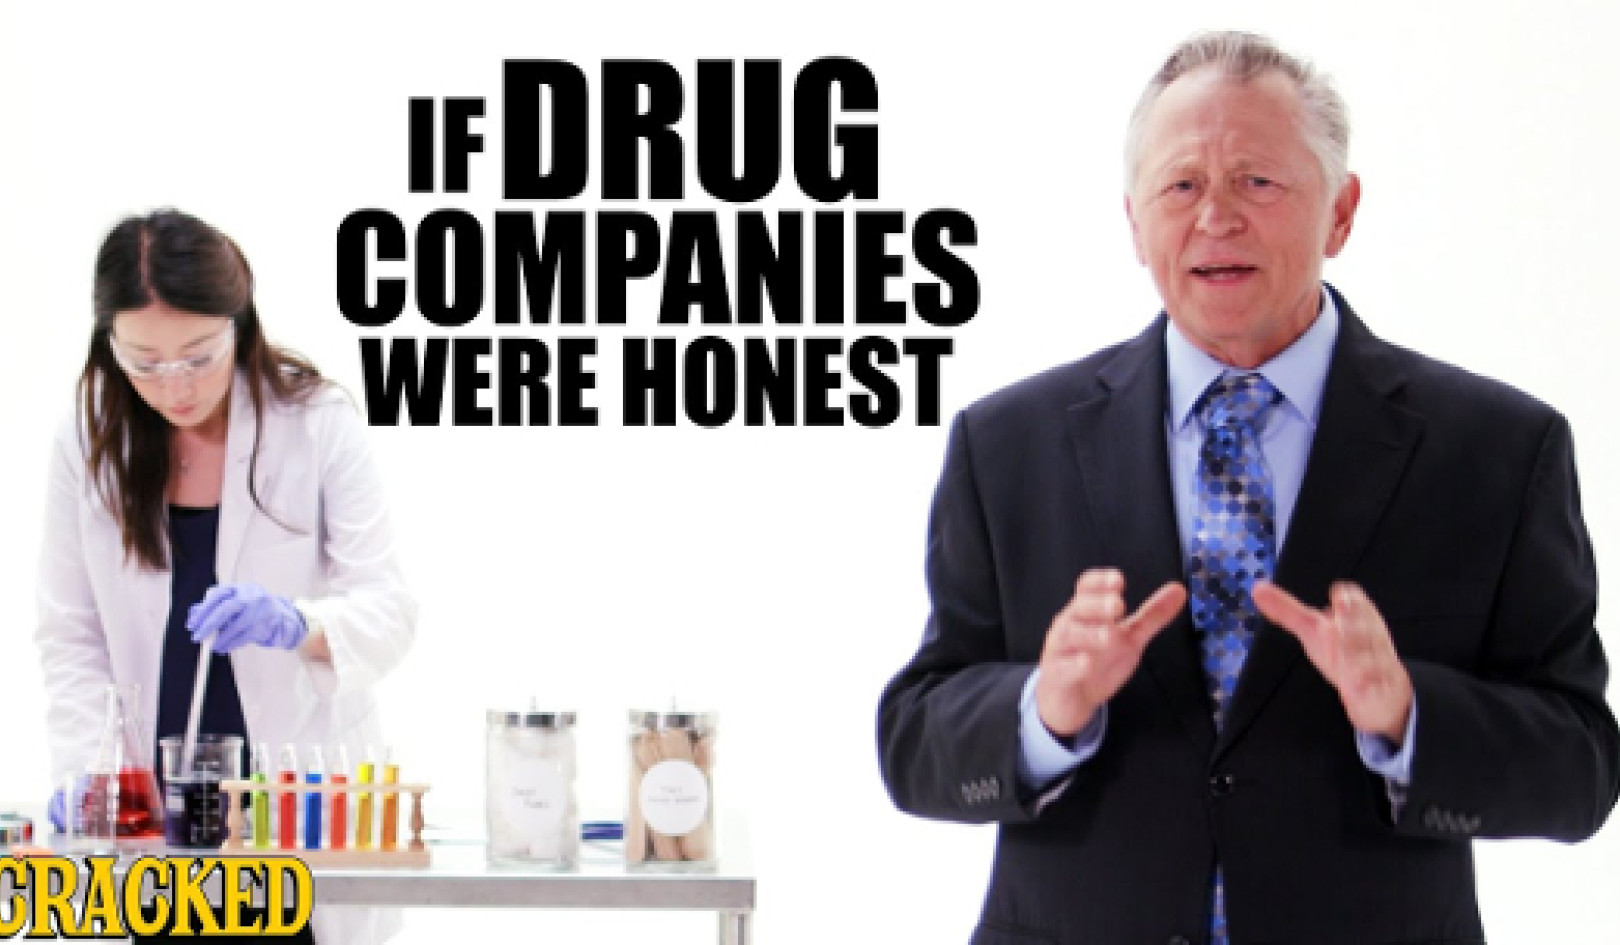 כיצד תעשיית התרופות משתמשת בדיסאינפורמציה כדי לערער את הרפורמה במחירי התרופות